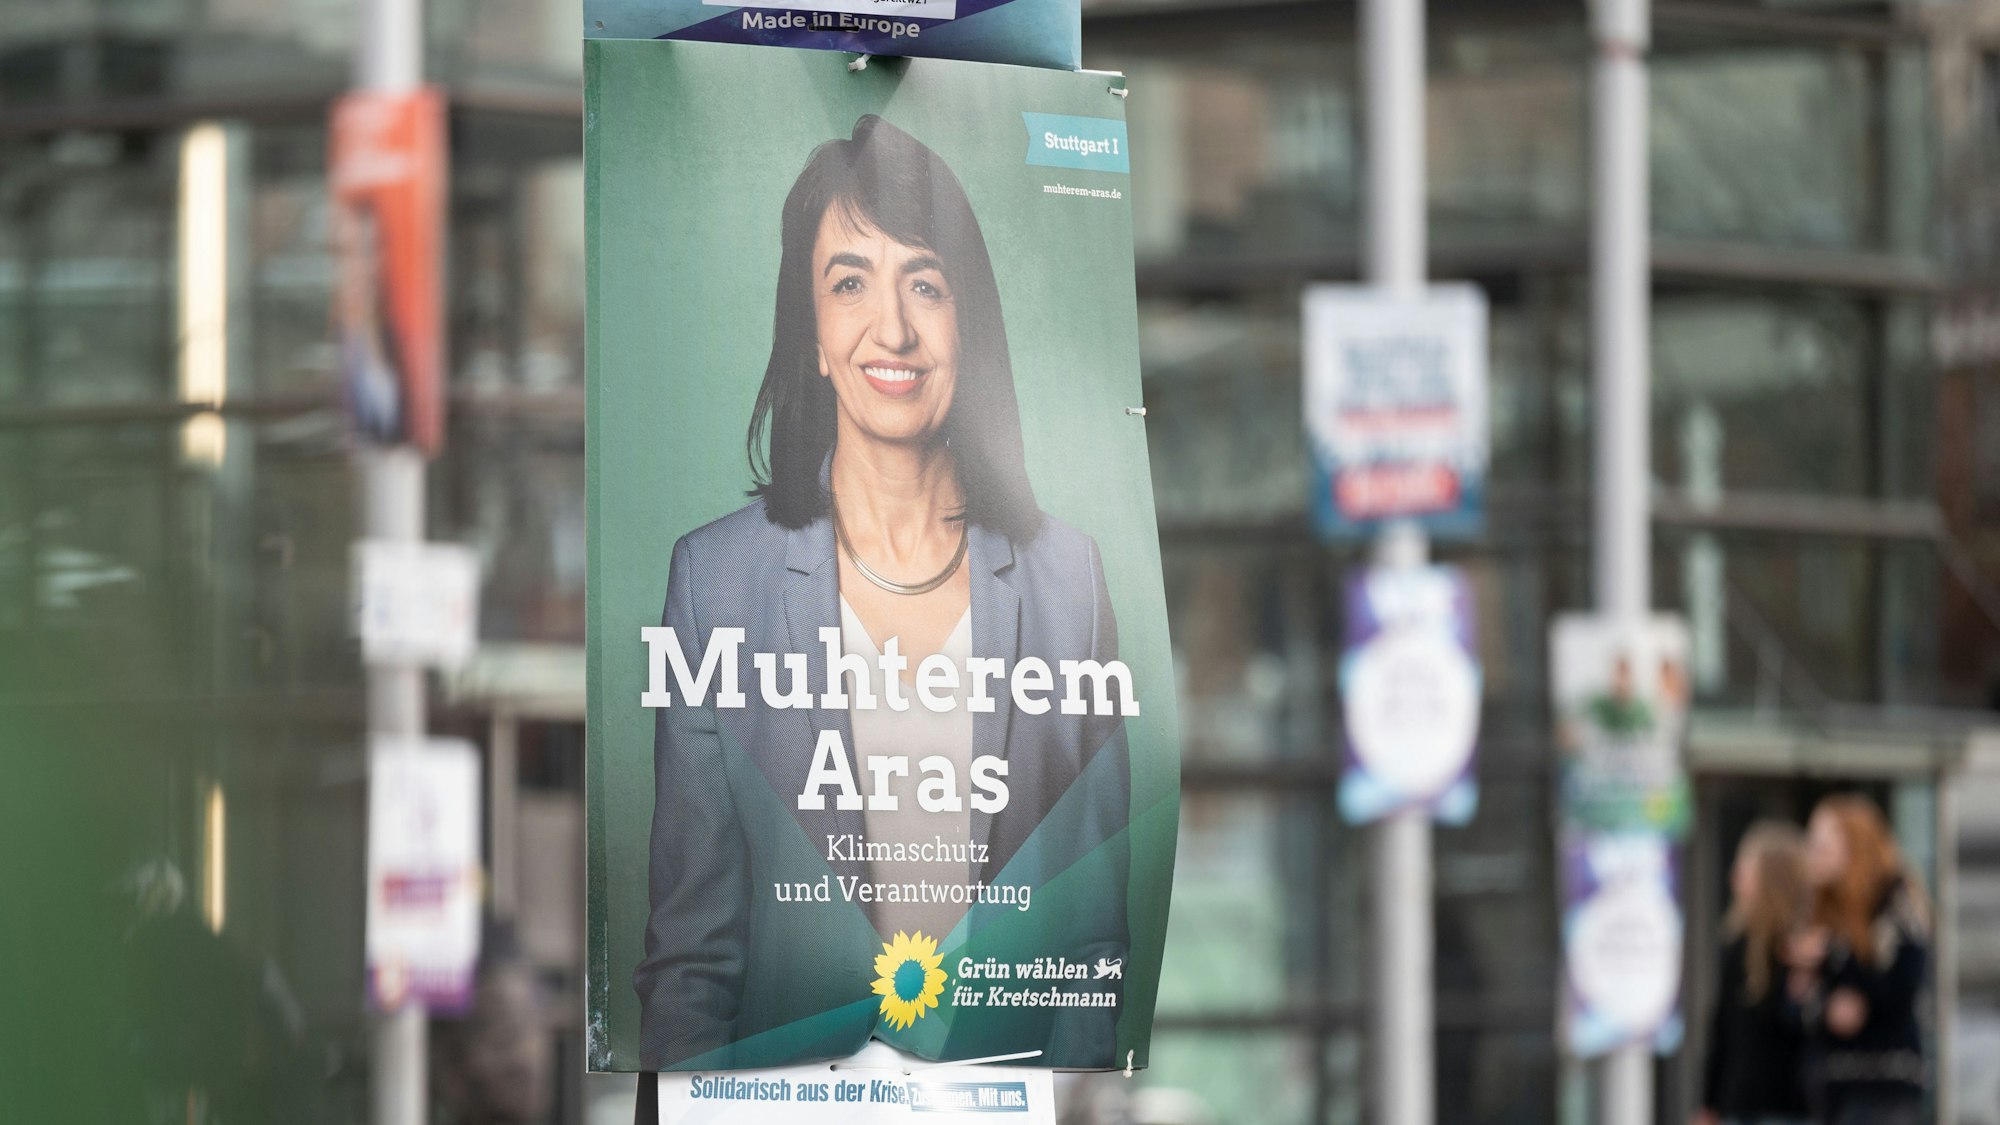 Ein Wahlplakat zur Landtagswahl in Baden-Württemberg, auf dem Muhterem Aras, die Kandidatin von Bündnis 90/Die Grünen für den Wahlkreis Stuttgart 1 und amtierende Landtagspräsidentin zu sehen ist, hängt an einem Mast am Marienplatz.